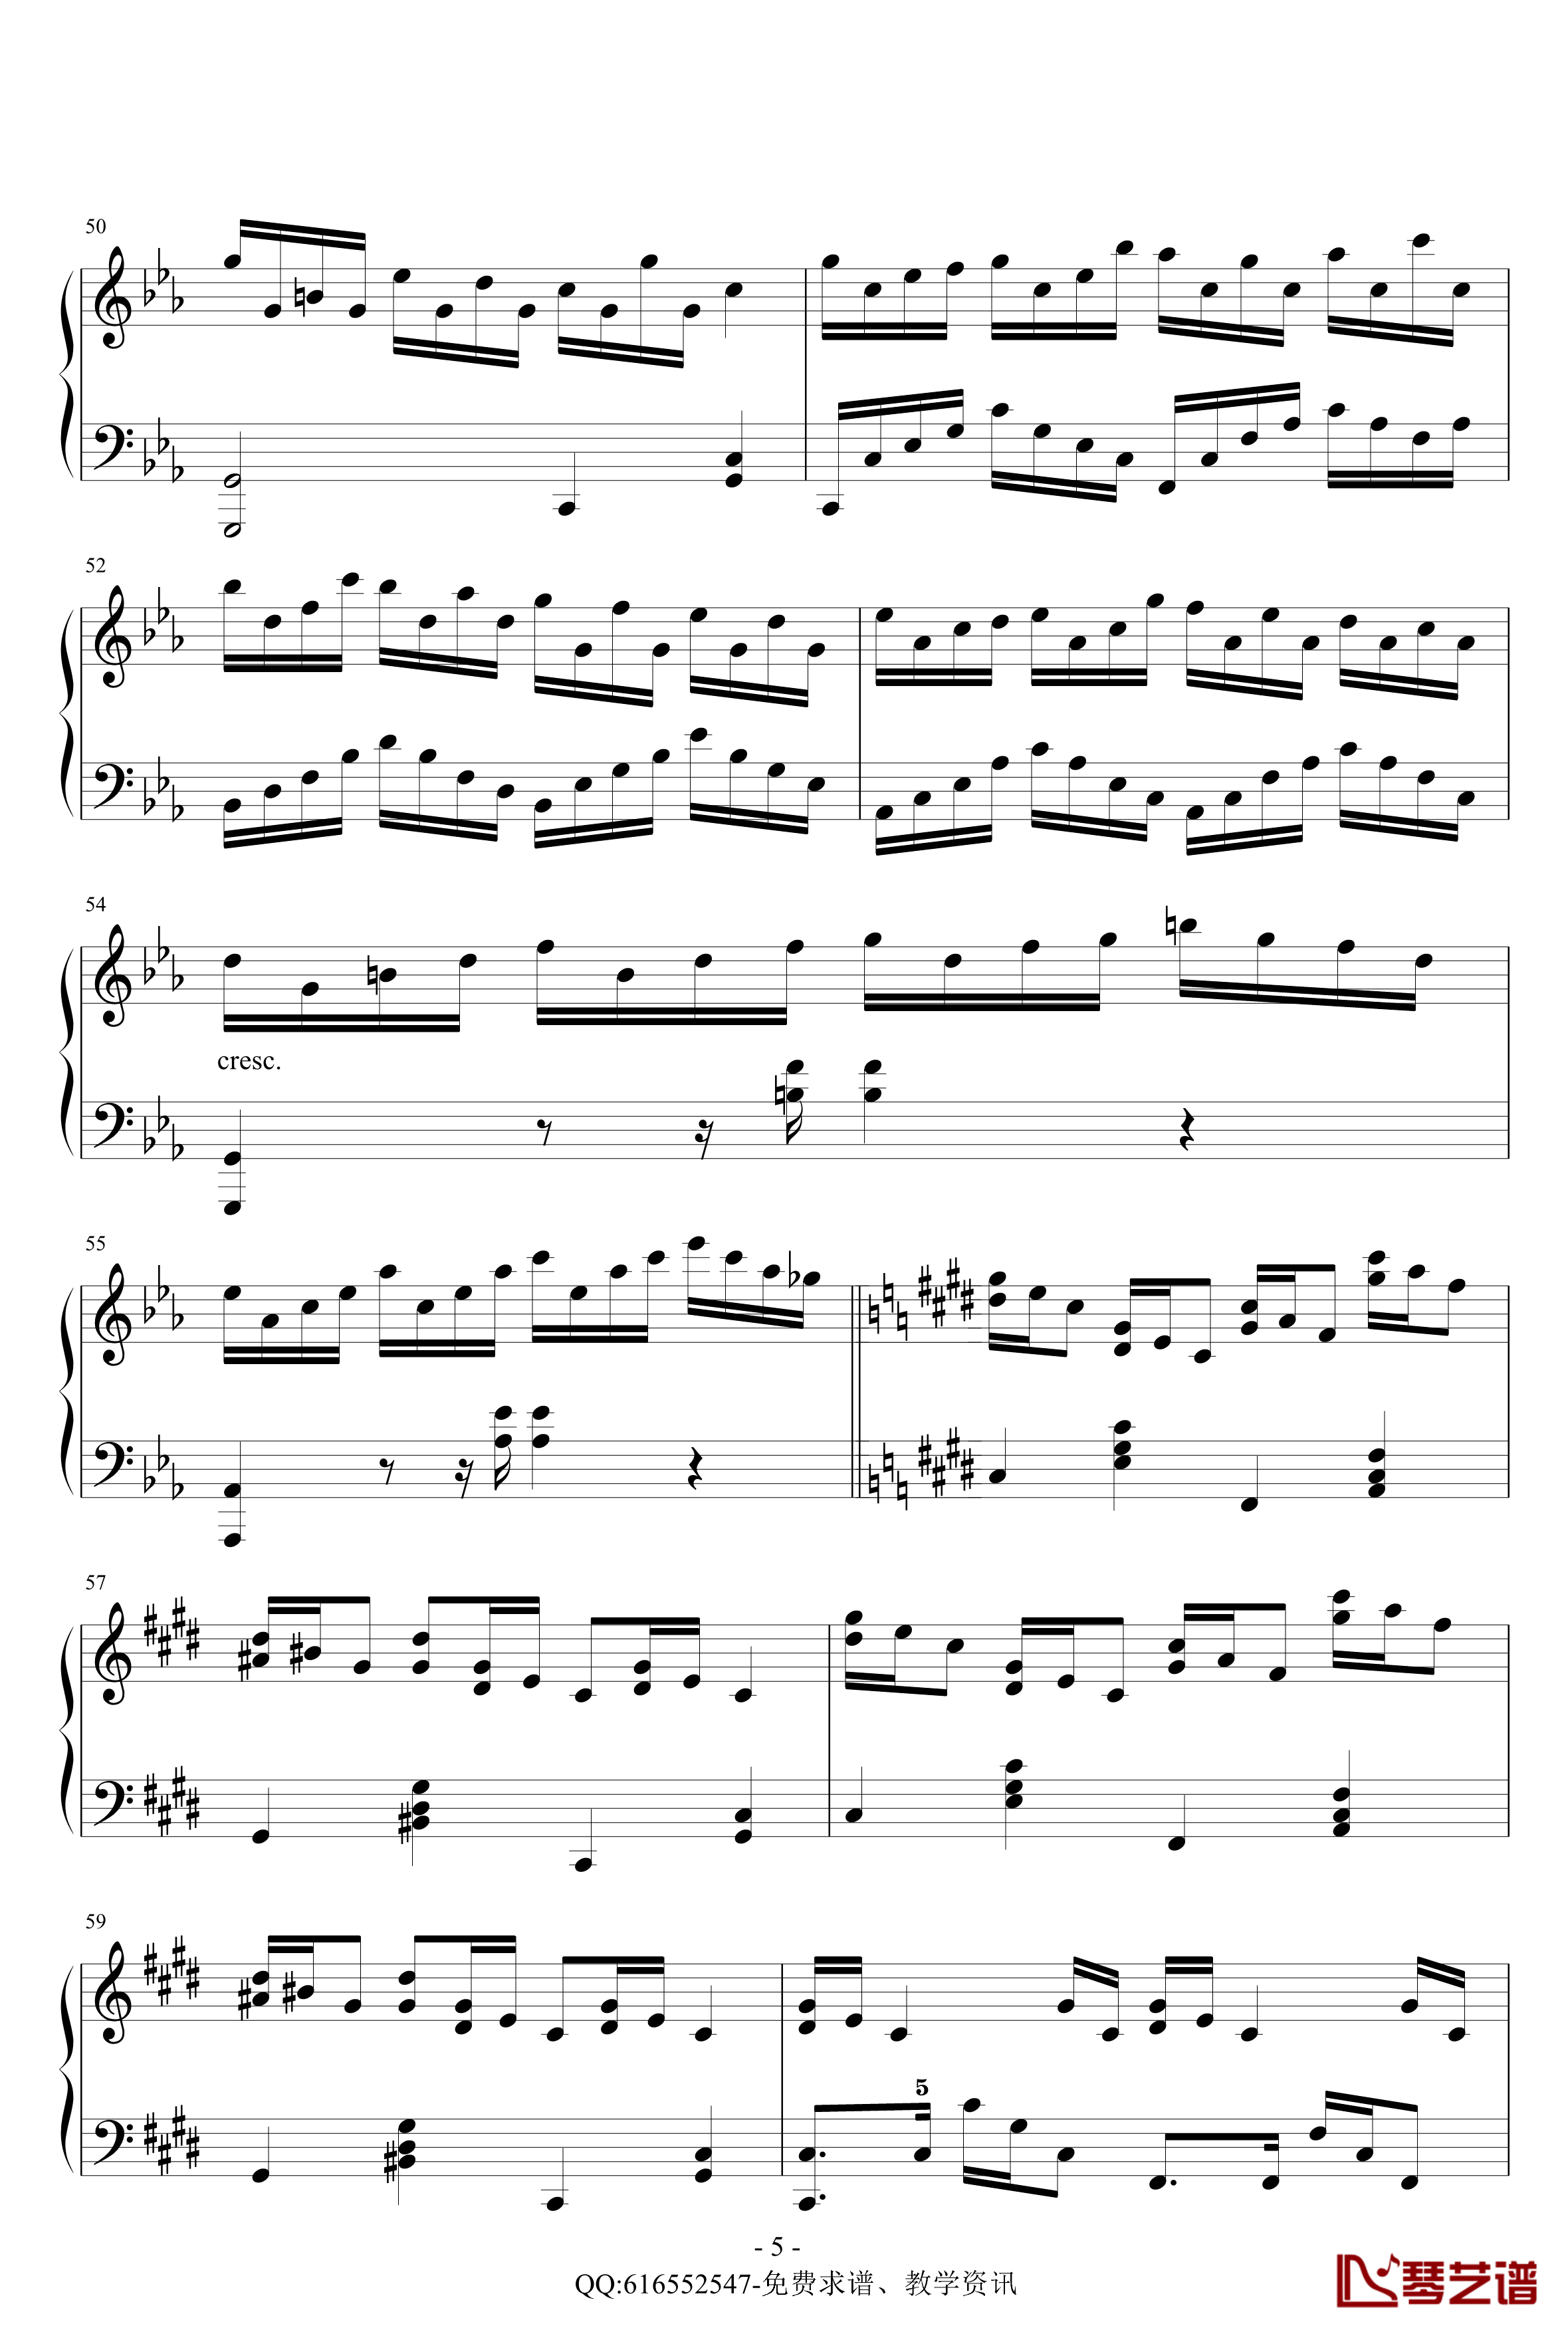 克罗地亚狂想曲钢琴谱-简化版-金龙鱼170427-马克西姆-Maksim·Mrvica5